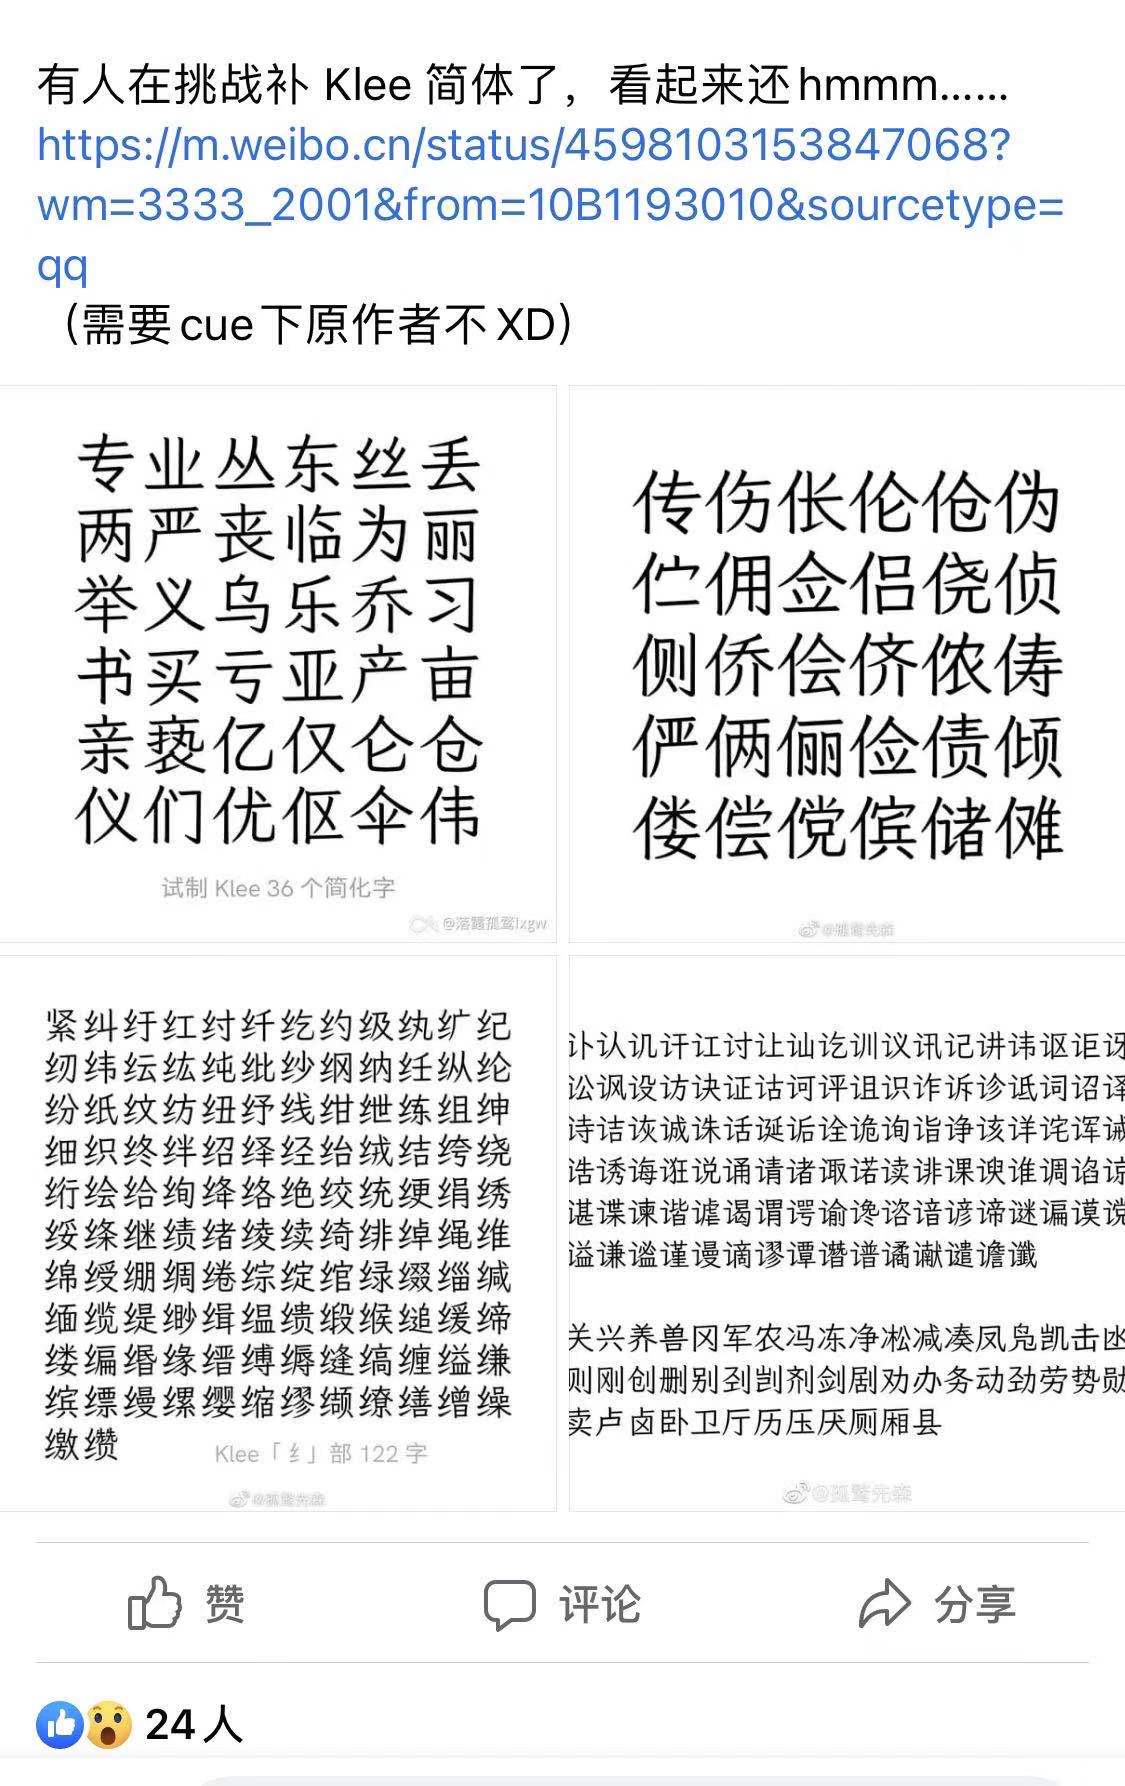 霞鹜文楷0.1 版已发布】 为Klee 试制简化字（多图预警） — LXGW · 落霞 